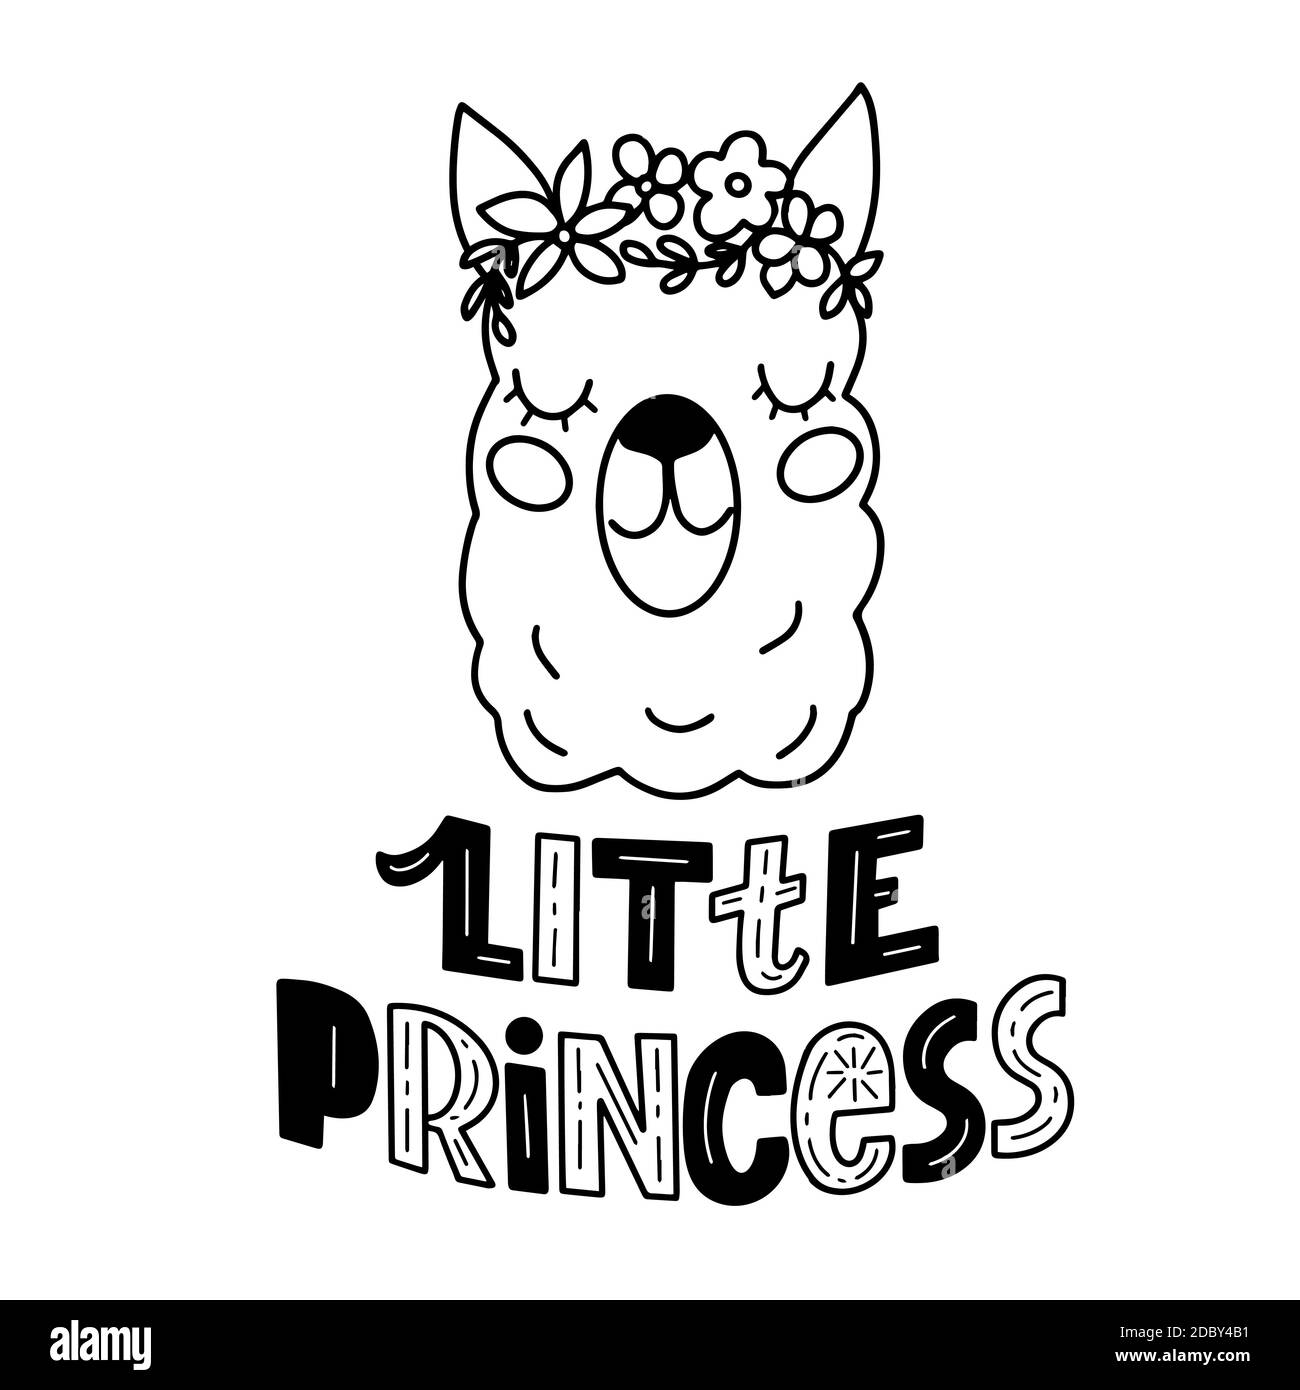 Imagen en blanco y negro de la cabeza de dibujos animados de llama y letras - pequeña princesa - en gráficos vectoriales. Para el diseño de postales, carteles Ilustración del Vector